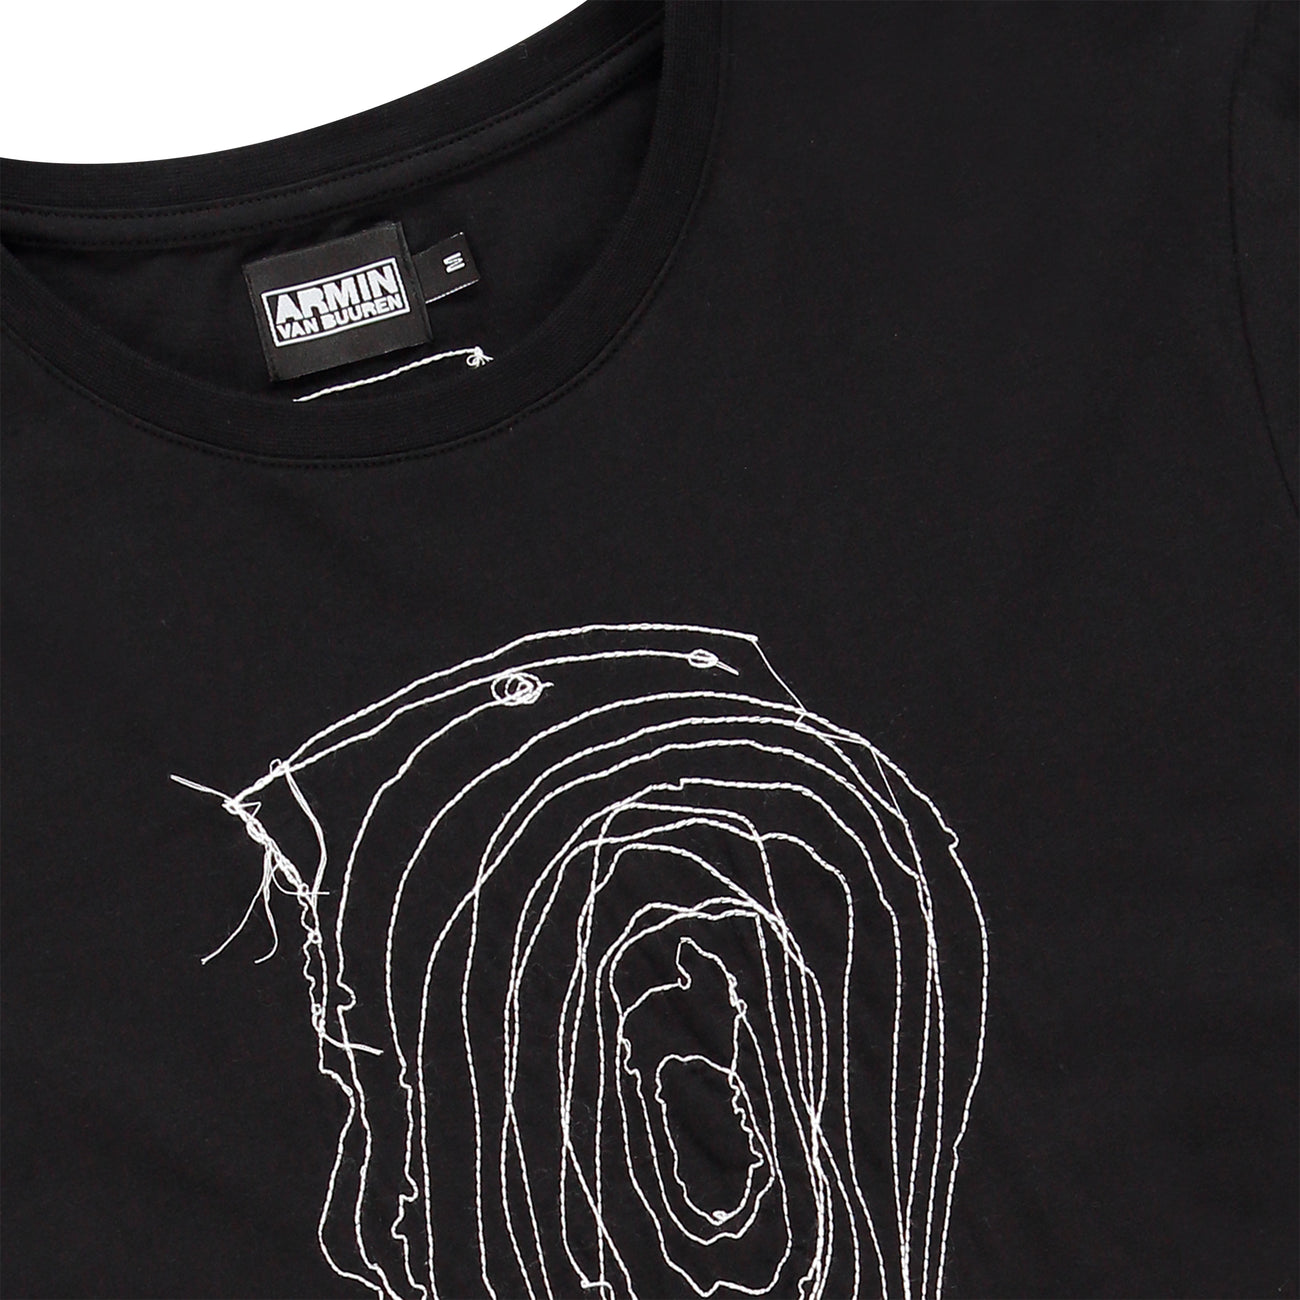 Armin van Buuren - Embroidery T-shirt